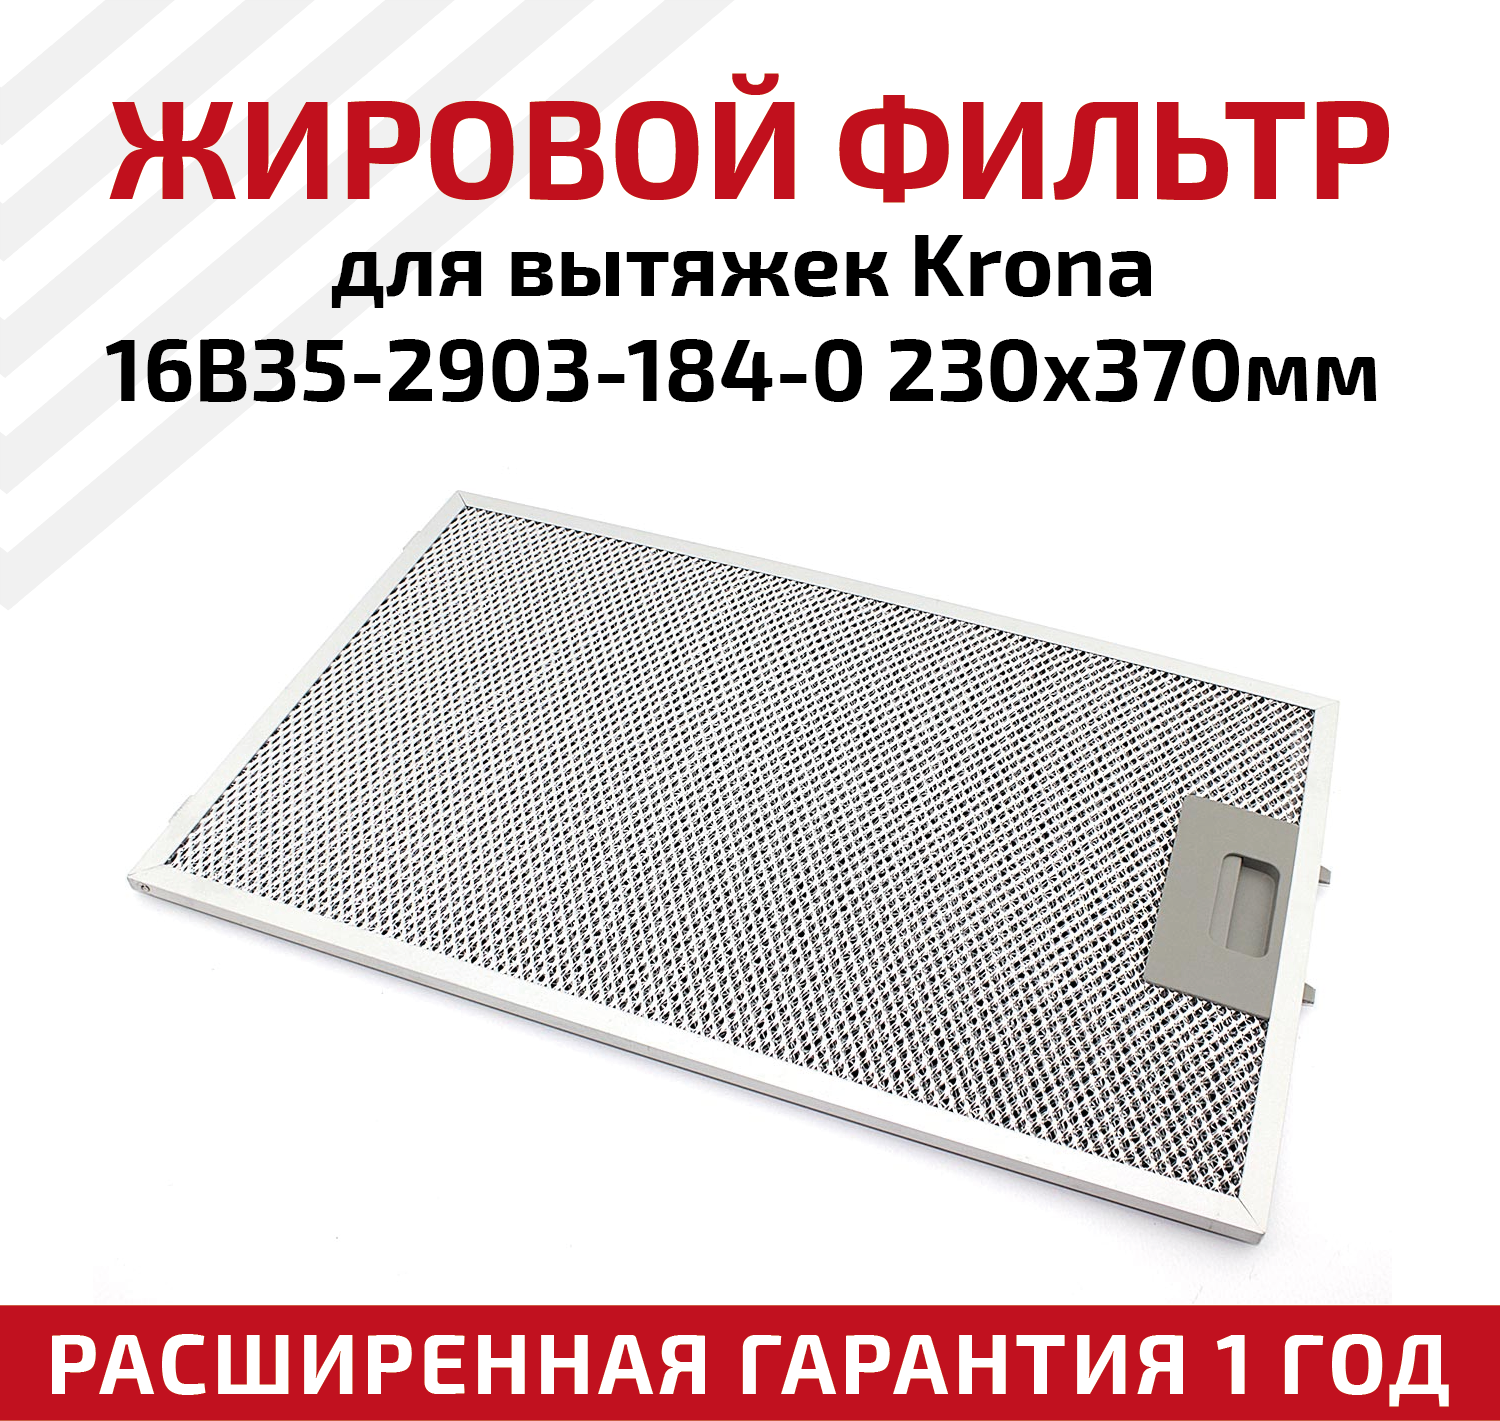 Жировой фильтр (кассета) алюминиевый (металлический) рамочный для кухонных вытяжек Krona 16B35-2903-184-0, многоразовый, 230х370мм